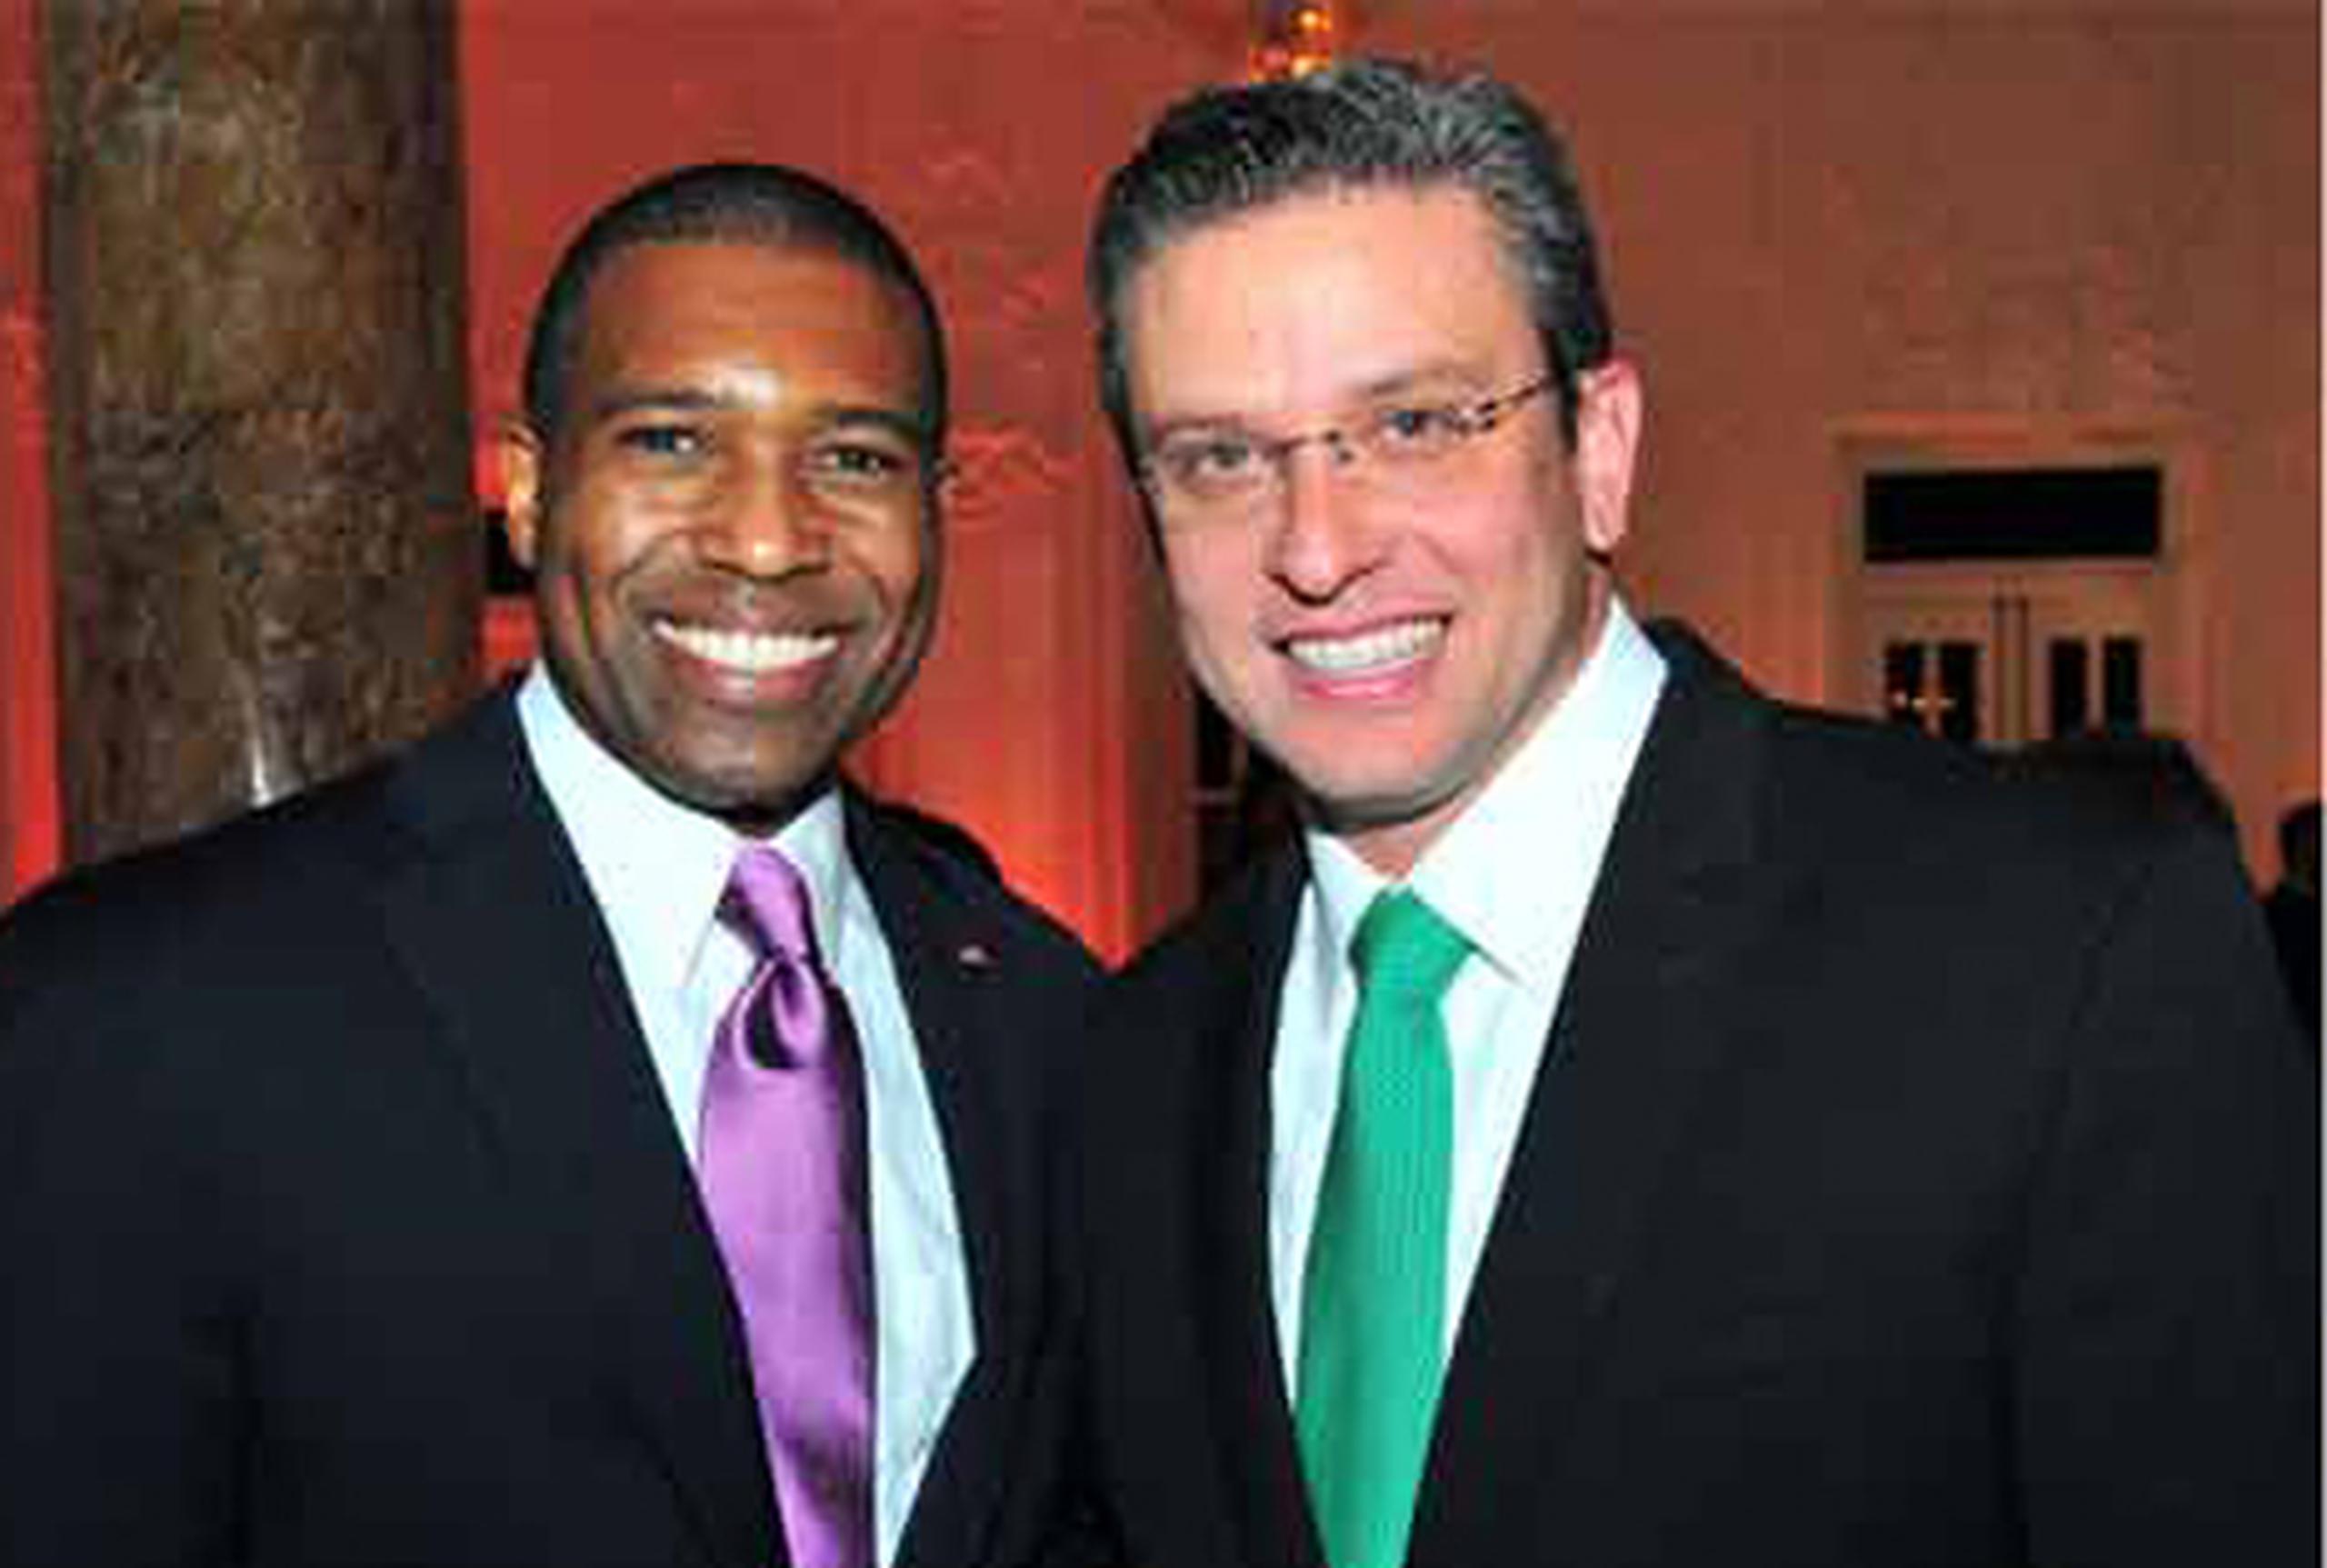 West y García Padilla ya compartieron anoche durante una recepción realizada en el Antiguo Casino de Puerto Rico, en San Juan. (Suministrada)